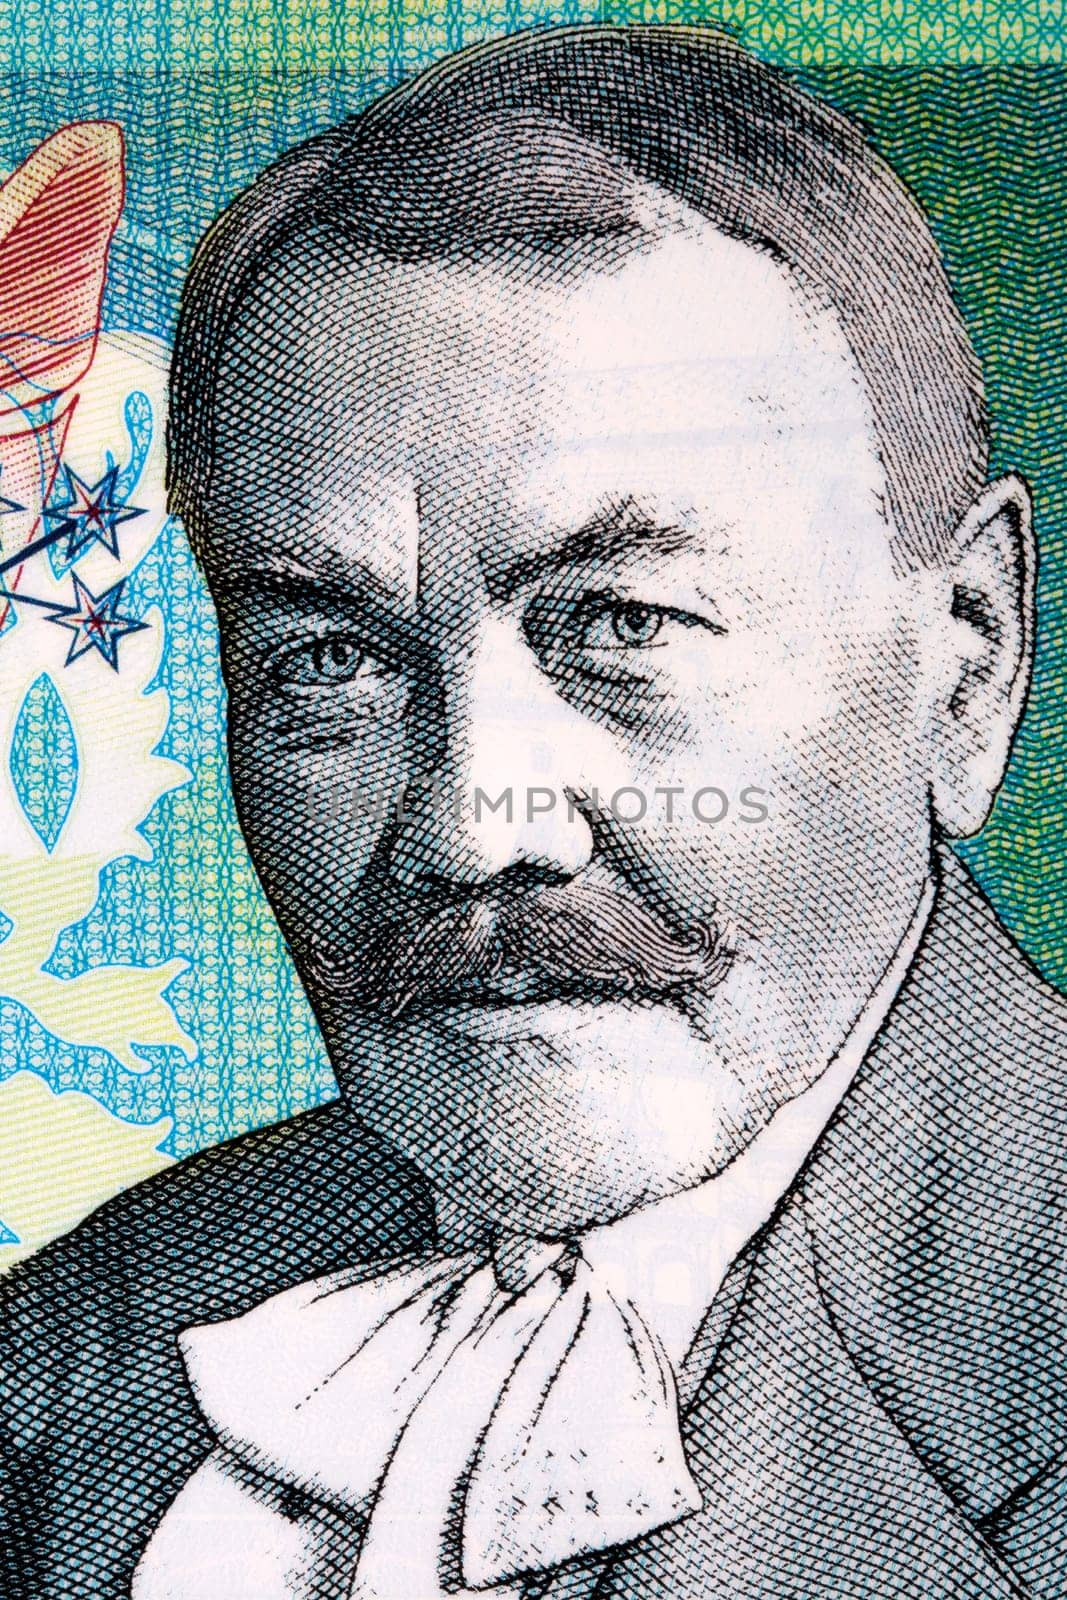 Pavol Orszagh Hviezdoslav a portrait from money by johan10